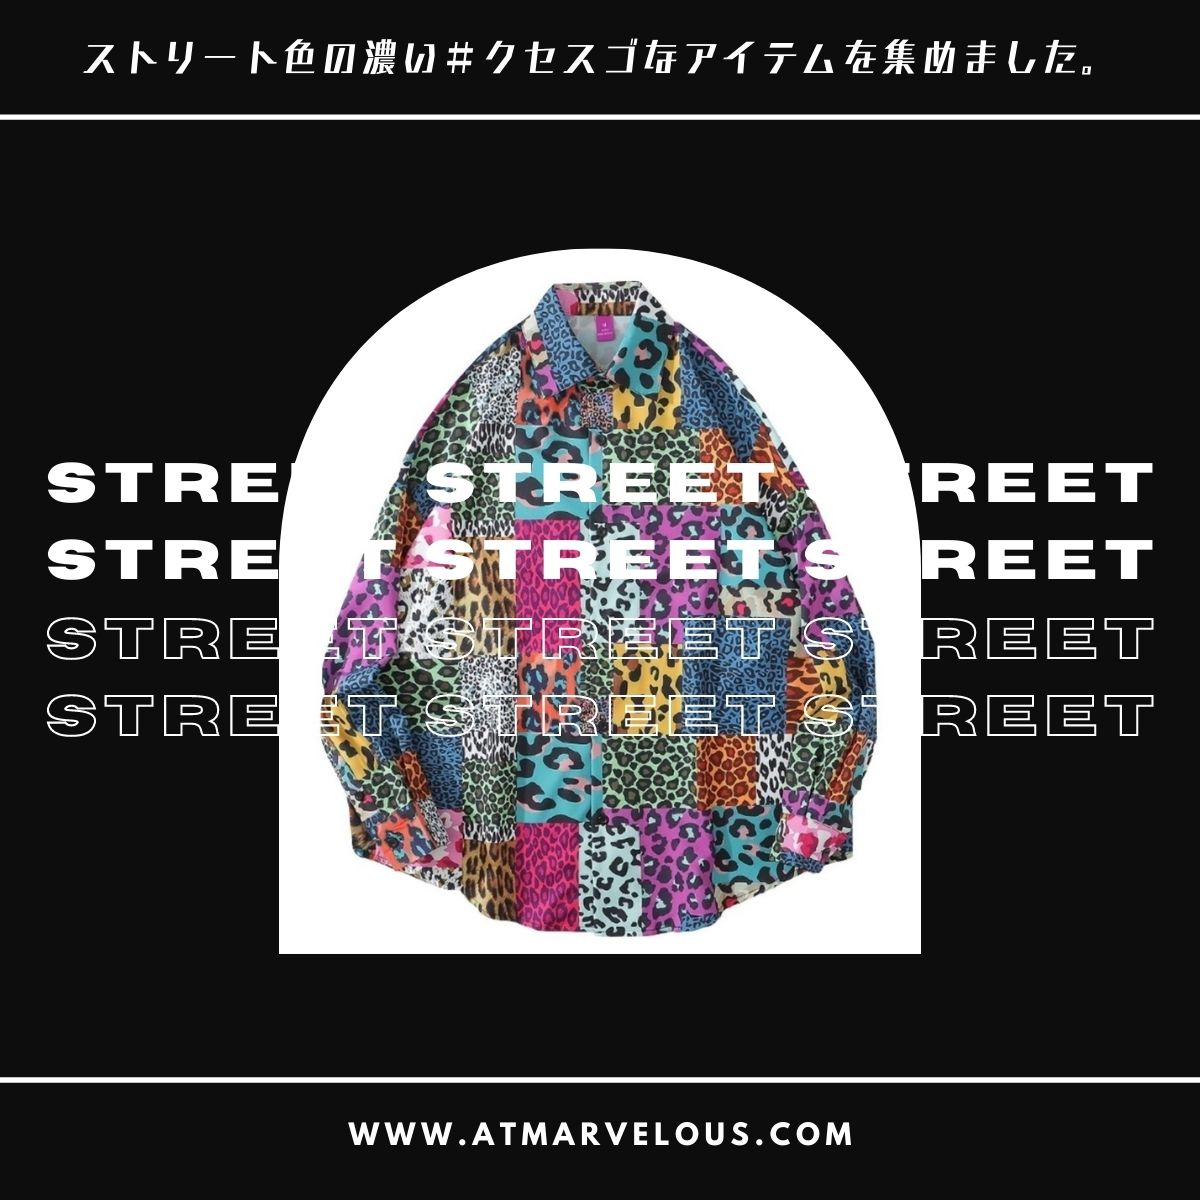 Street -ストリートピックアップ-